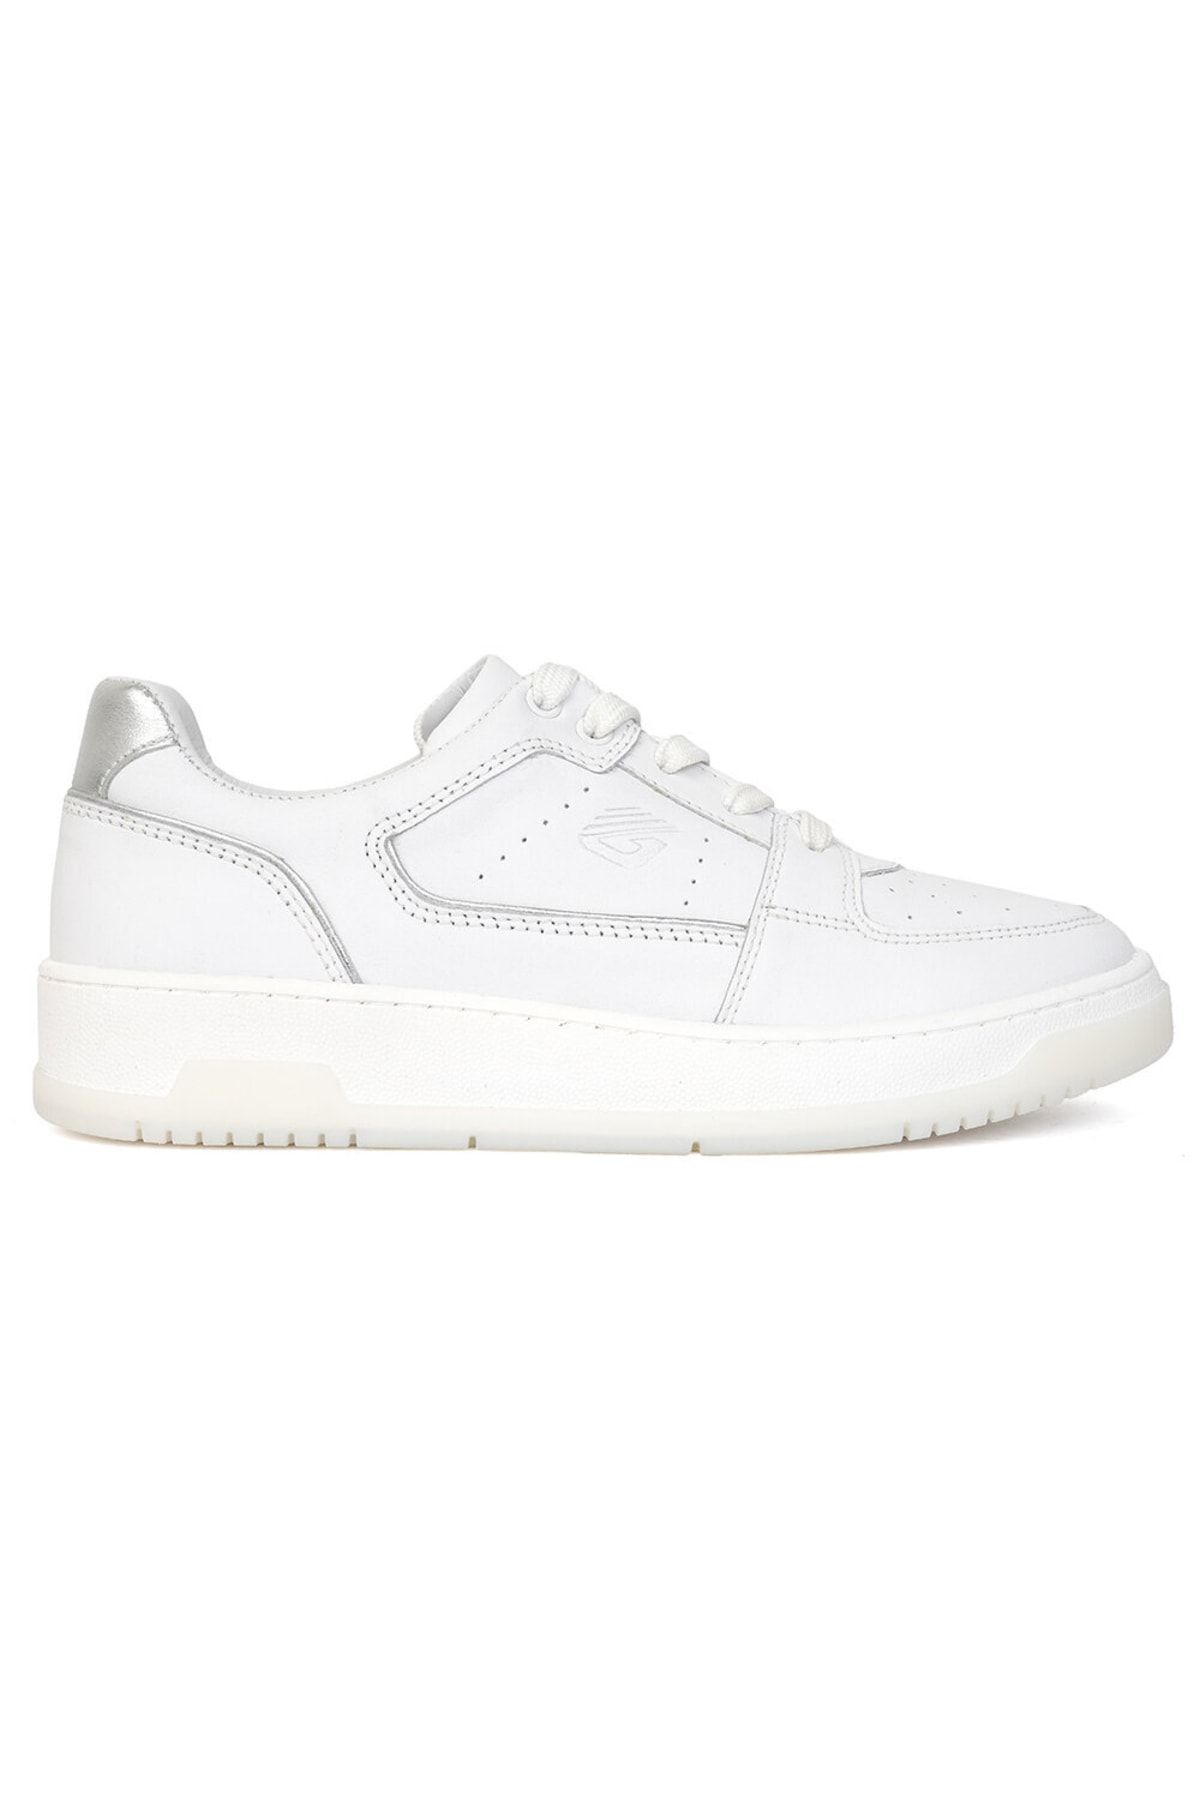 Greyder Kadın Beyaz Gümüş Hakiki Deri Sneaker Ayakkabı 3y2sa32311